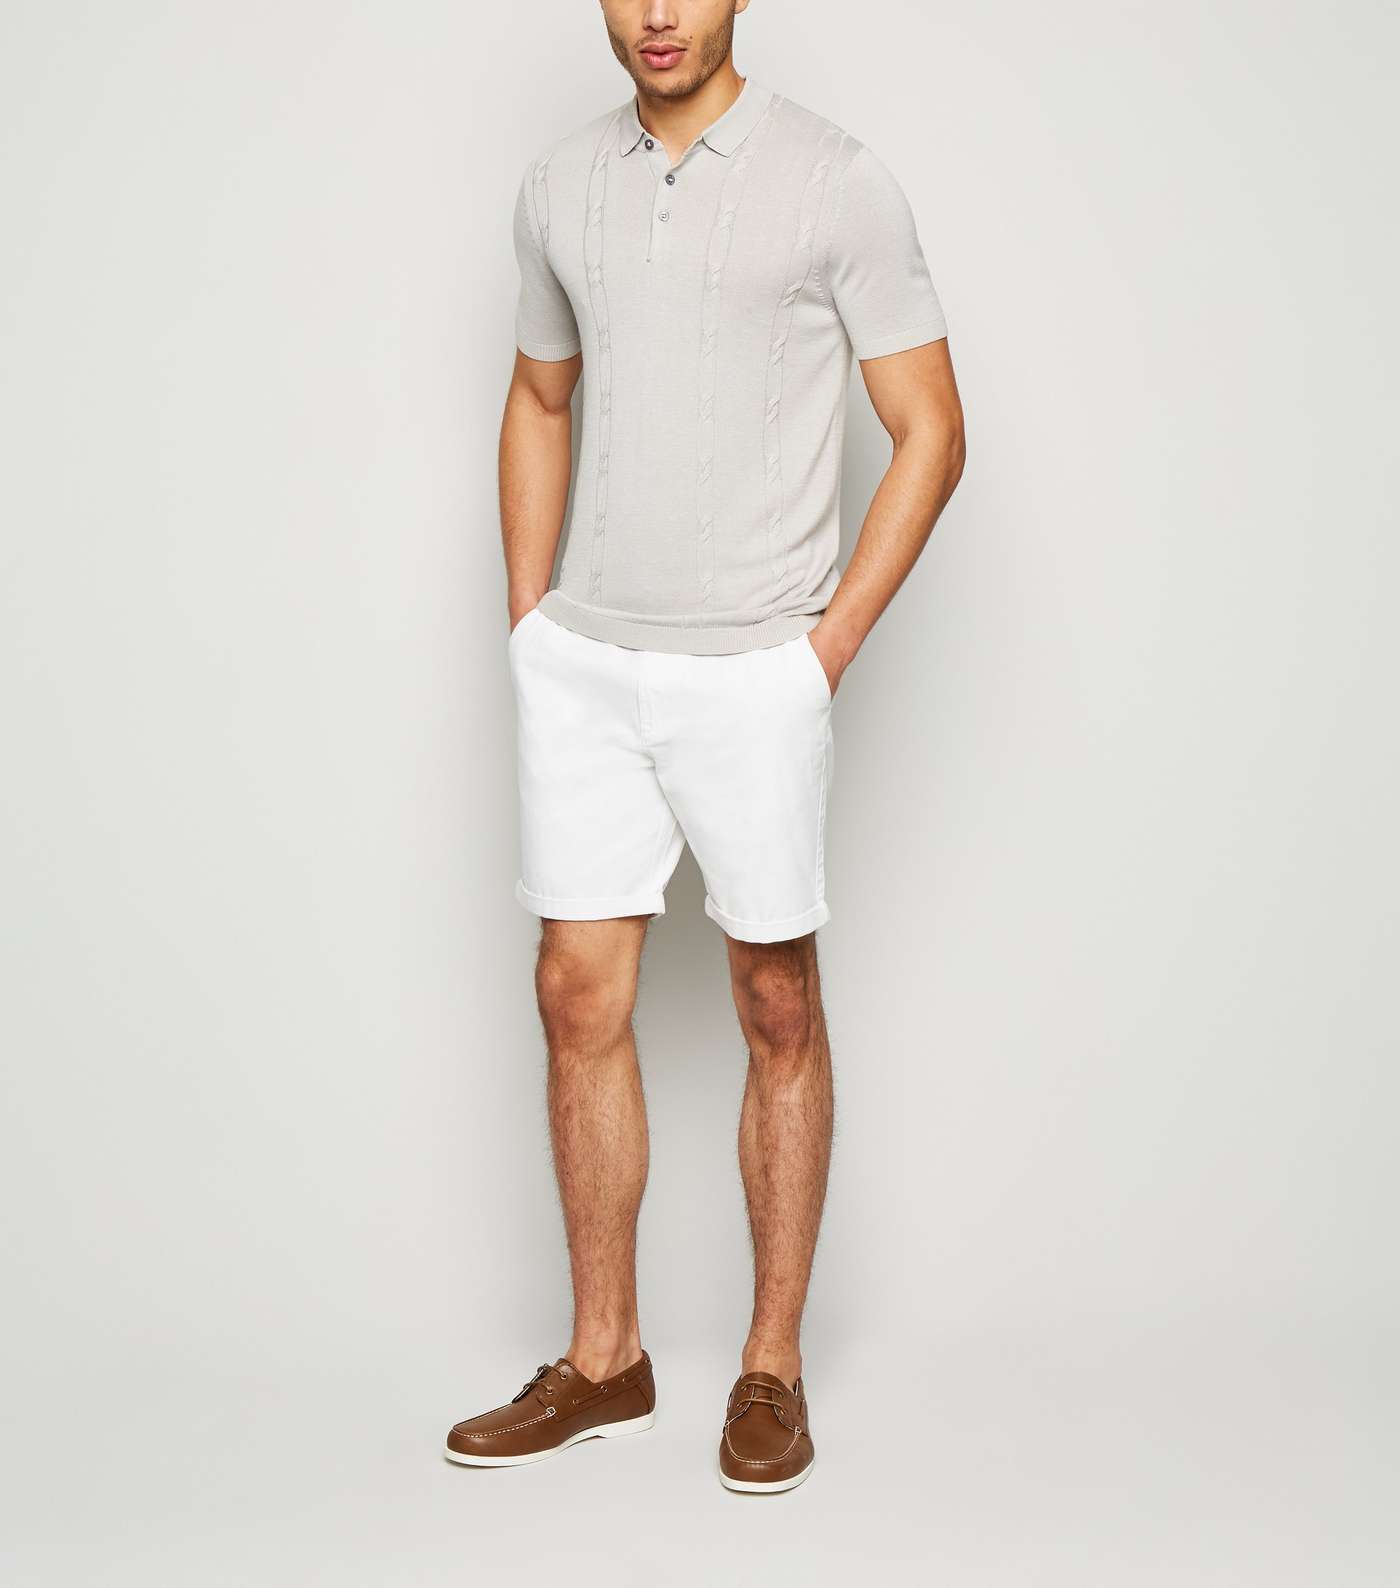 White Shorter Length Chino Shorts Image 2